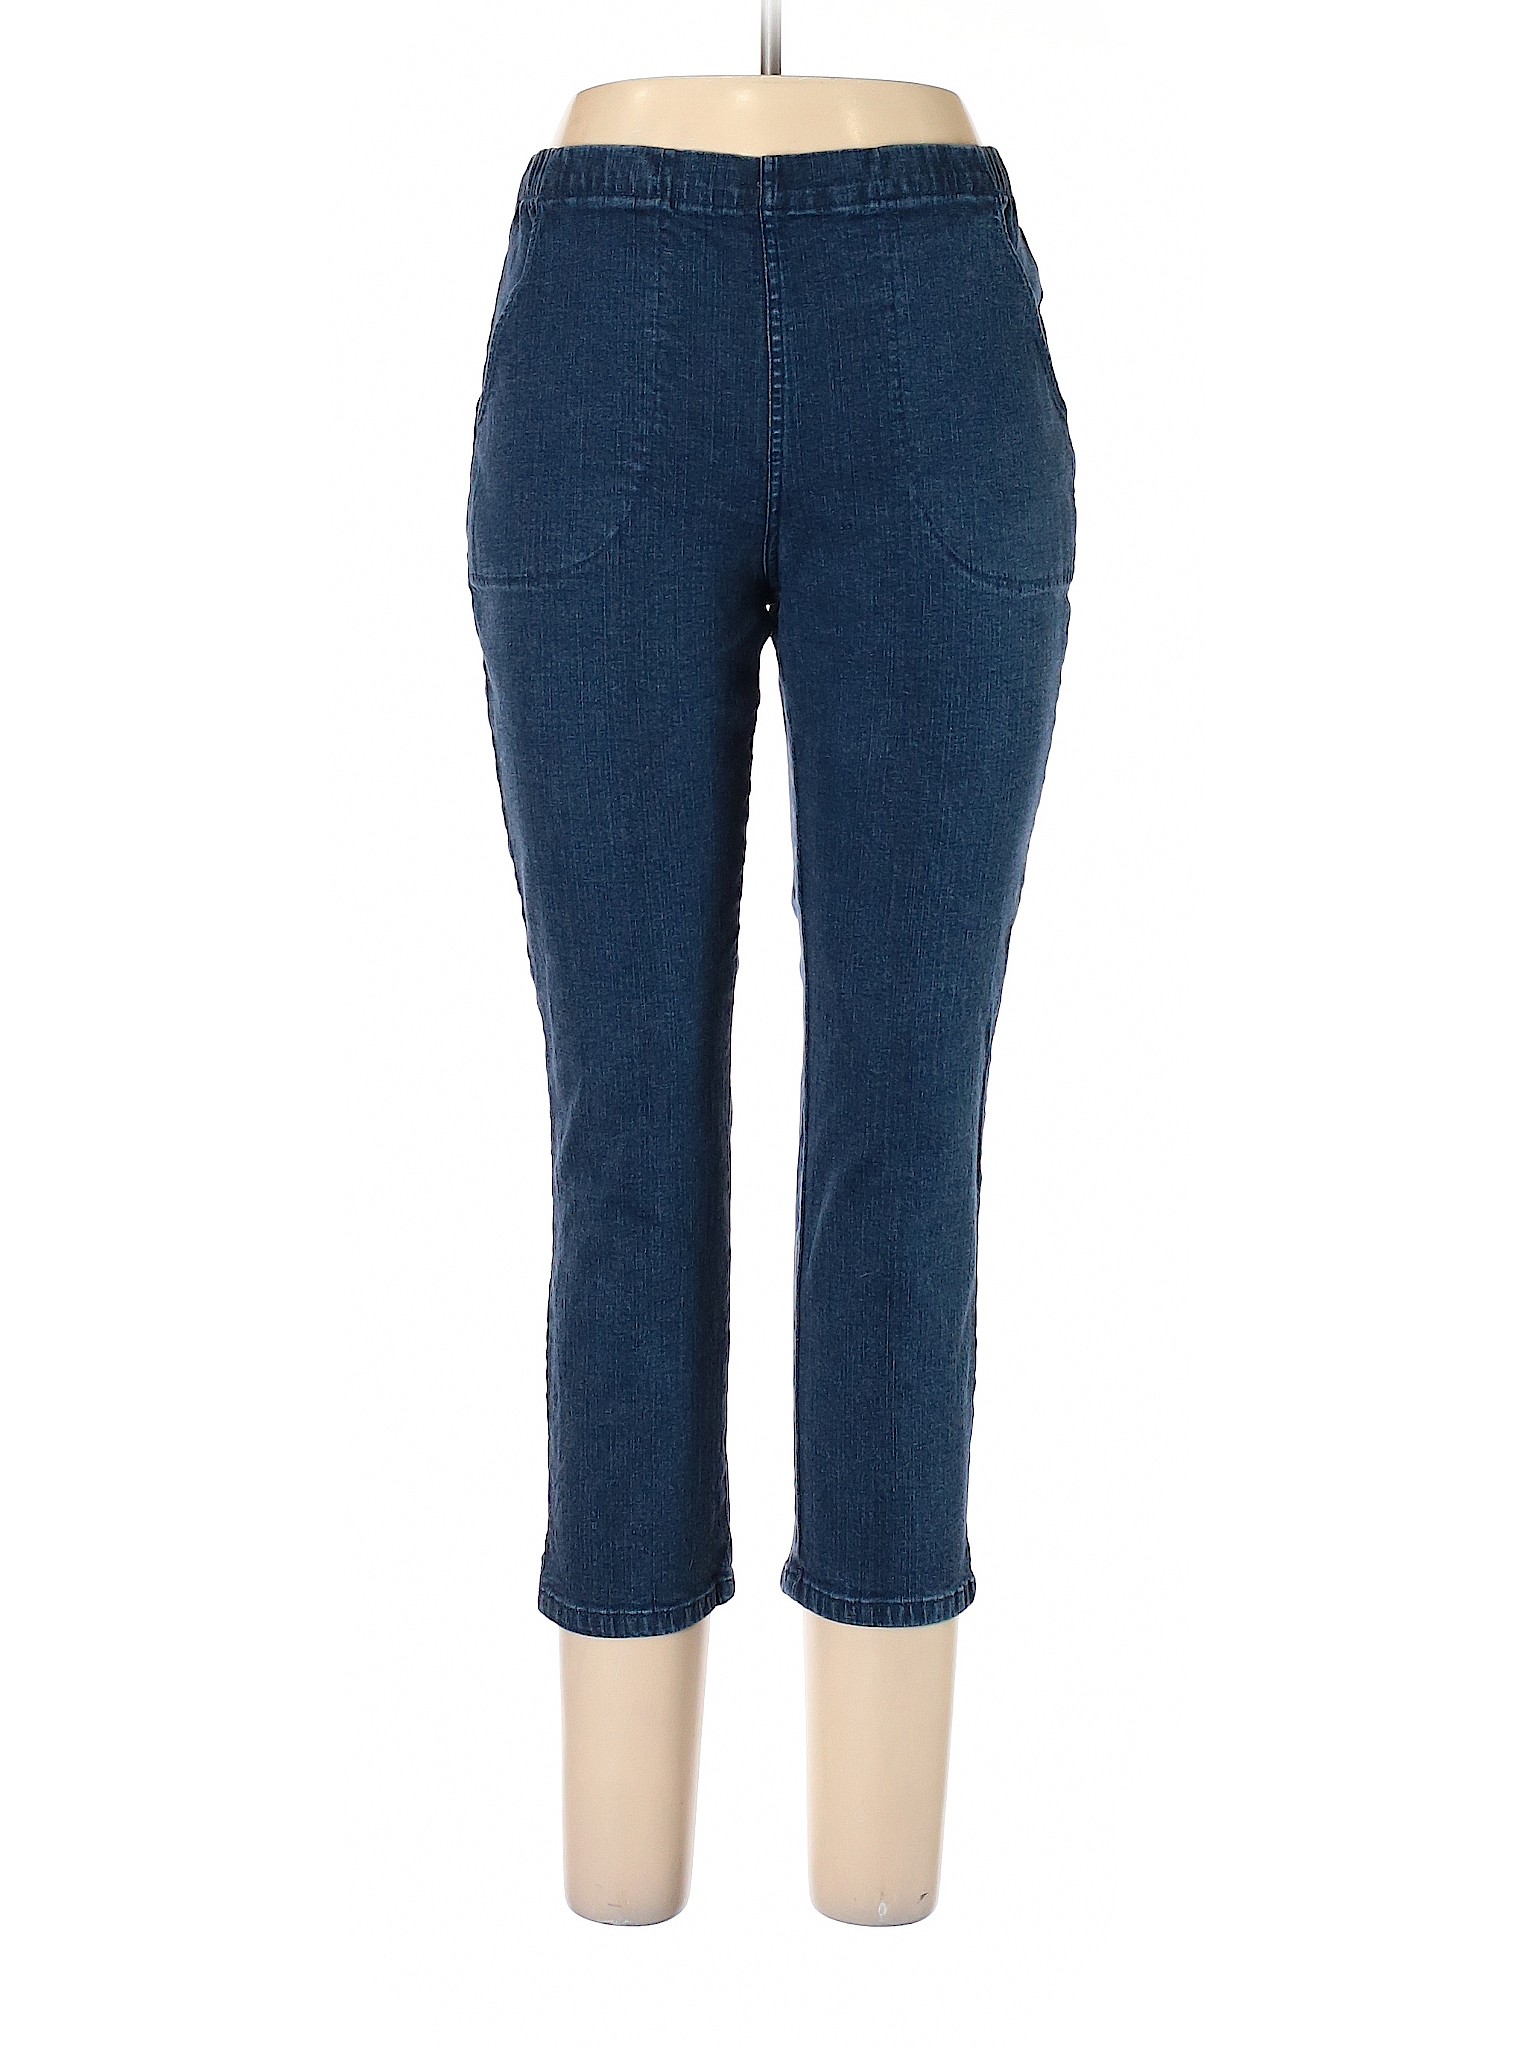 Croft & Barrow Women Blue Jeans 10 Petites | eBay